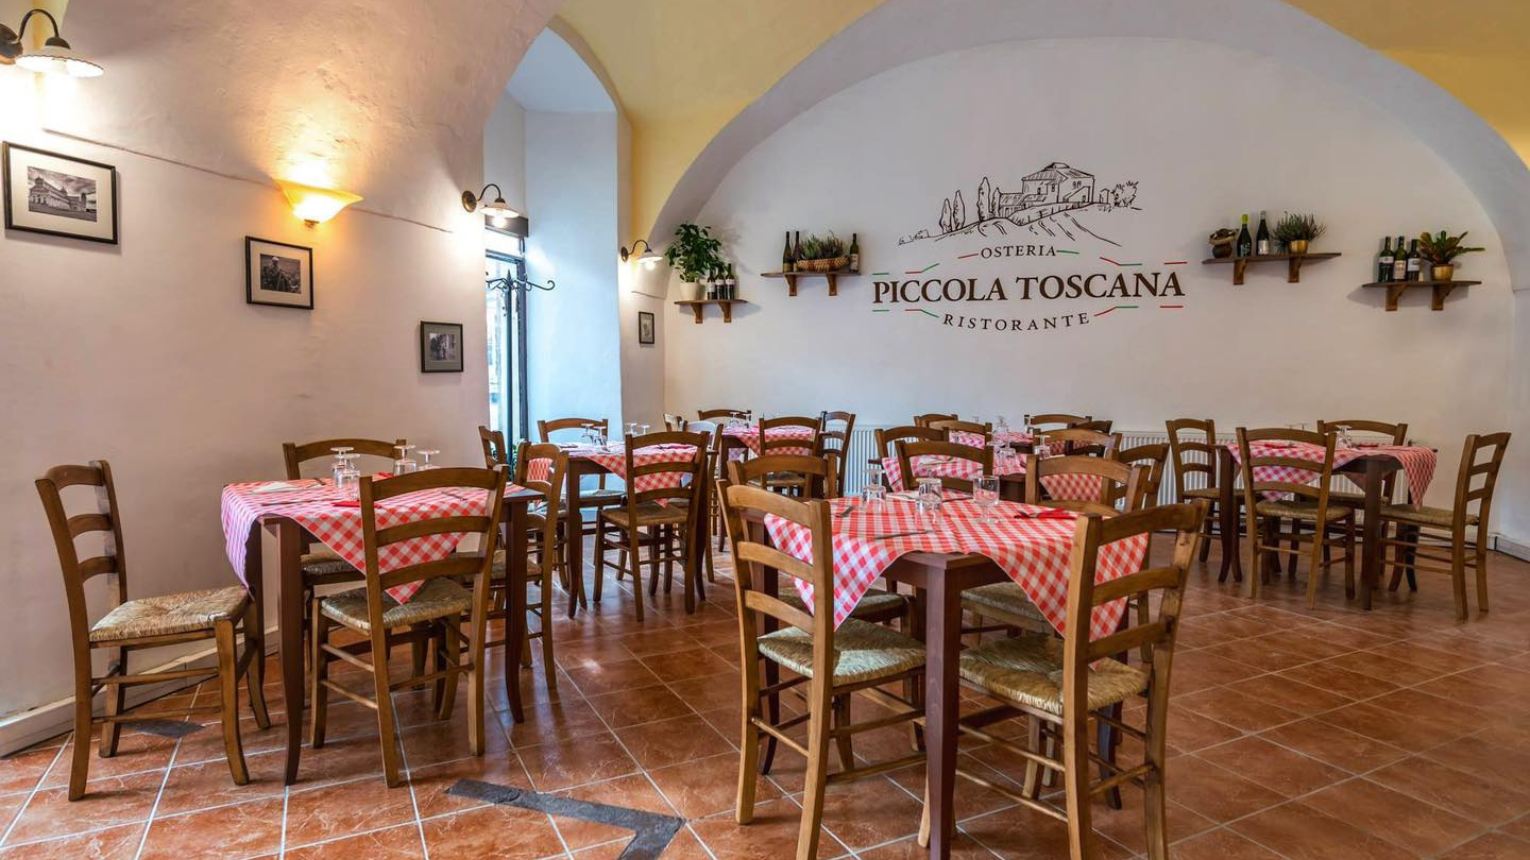 Olasz élőzenés romantikus vacsora a Piccola Toscanaban 2 főre 4